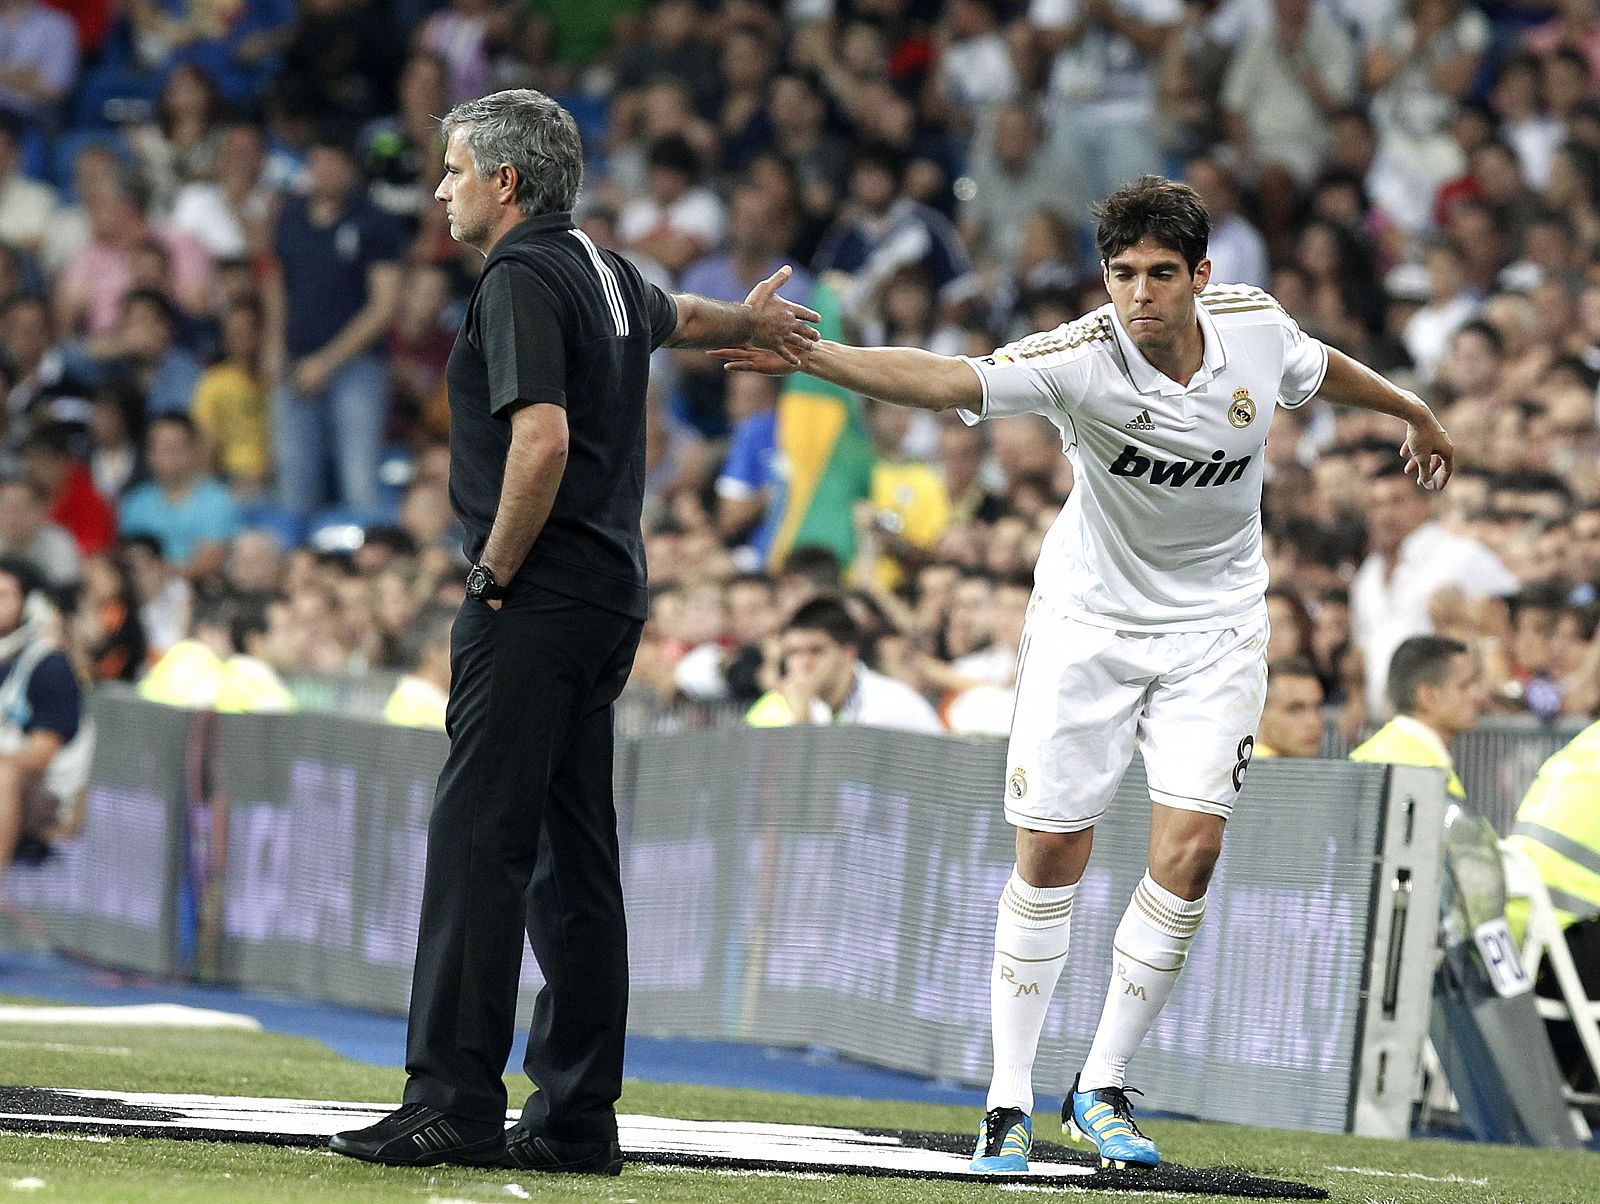 El centrocampista brasileño del Real Madrid, Ricardo Izecson "Kaká" (d), recibe el saludo del entrenador portugués, José Mourinho, tras ser sustituido